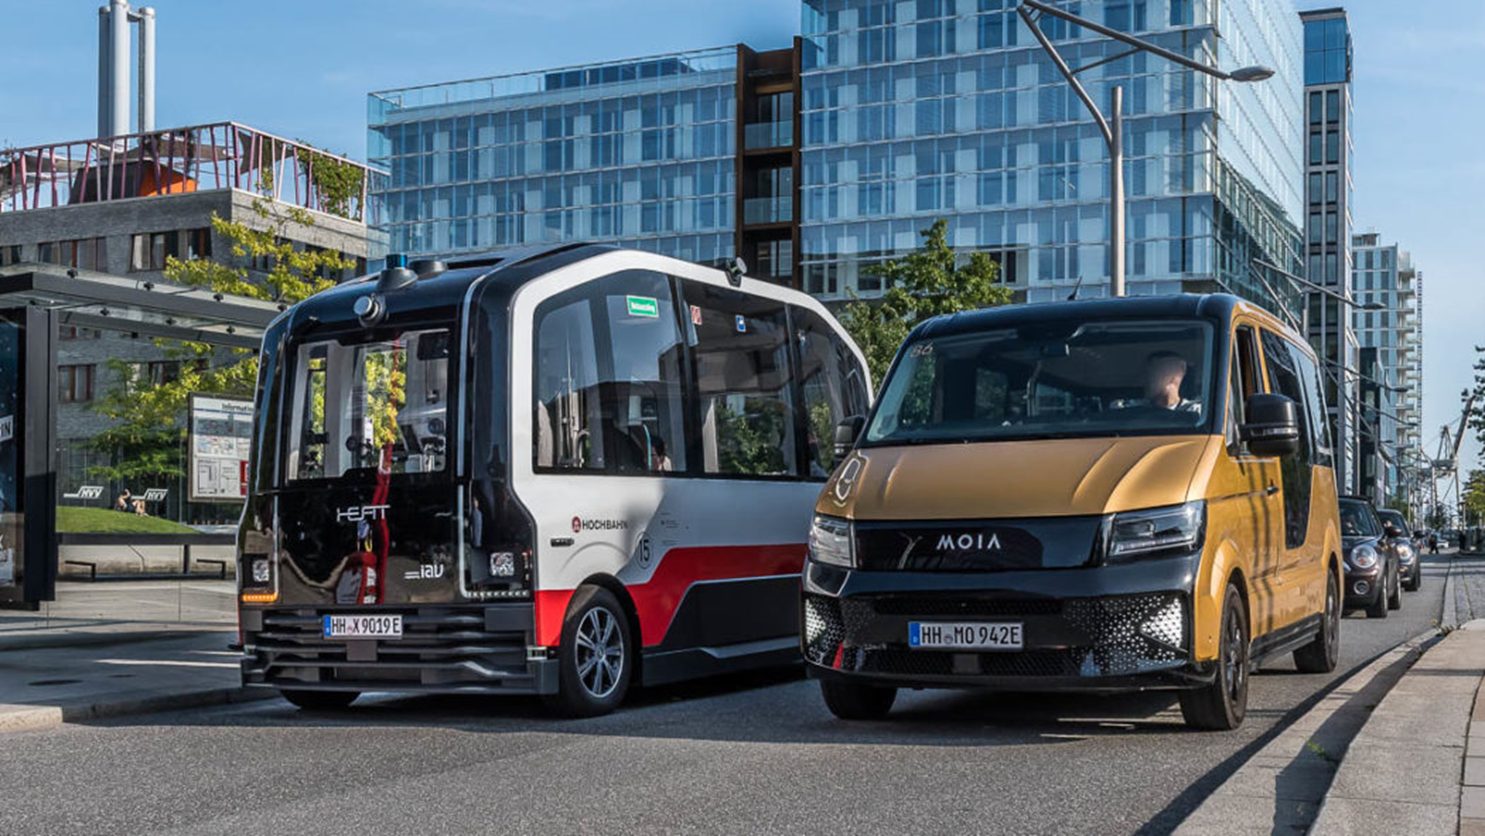 Abbildung 6: Beispiele für nachhaltige Verkehrskonzepte: Selbstfahrender Bus der Hochbahn und ein Fahrzeug des Fahrdienstes MOIA